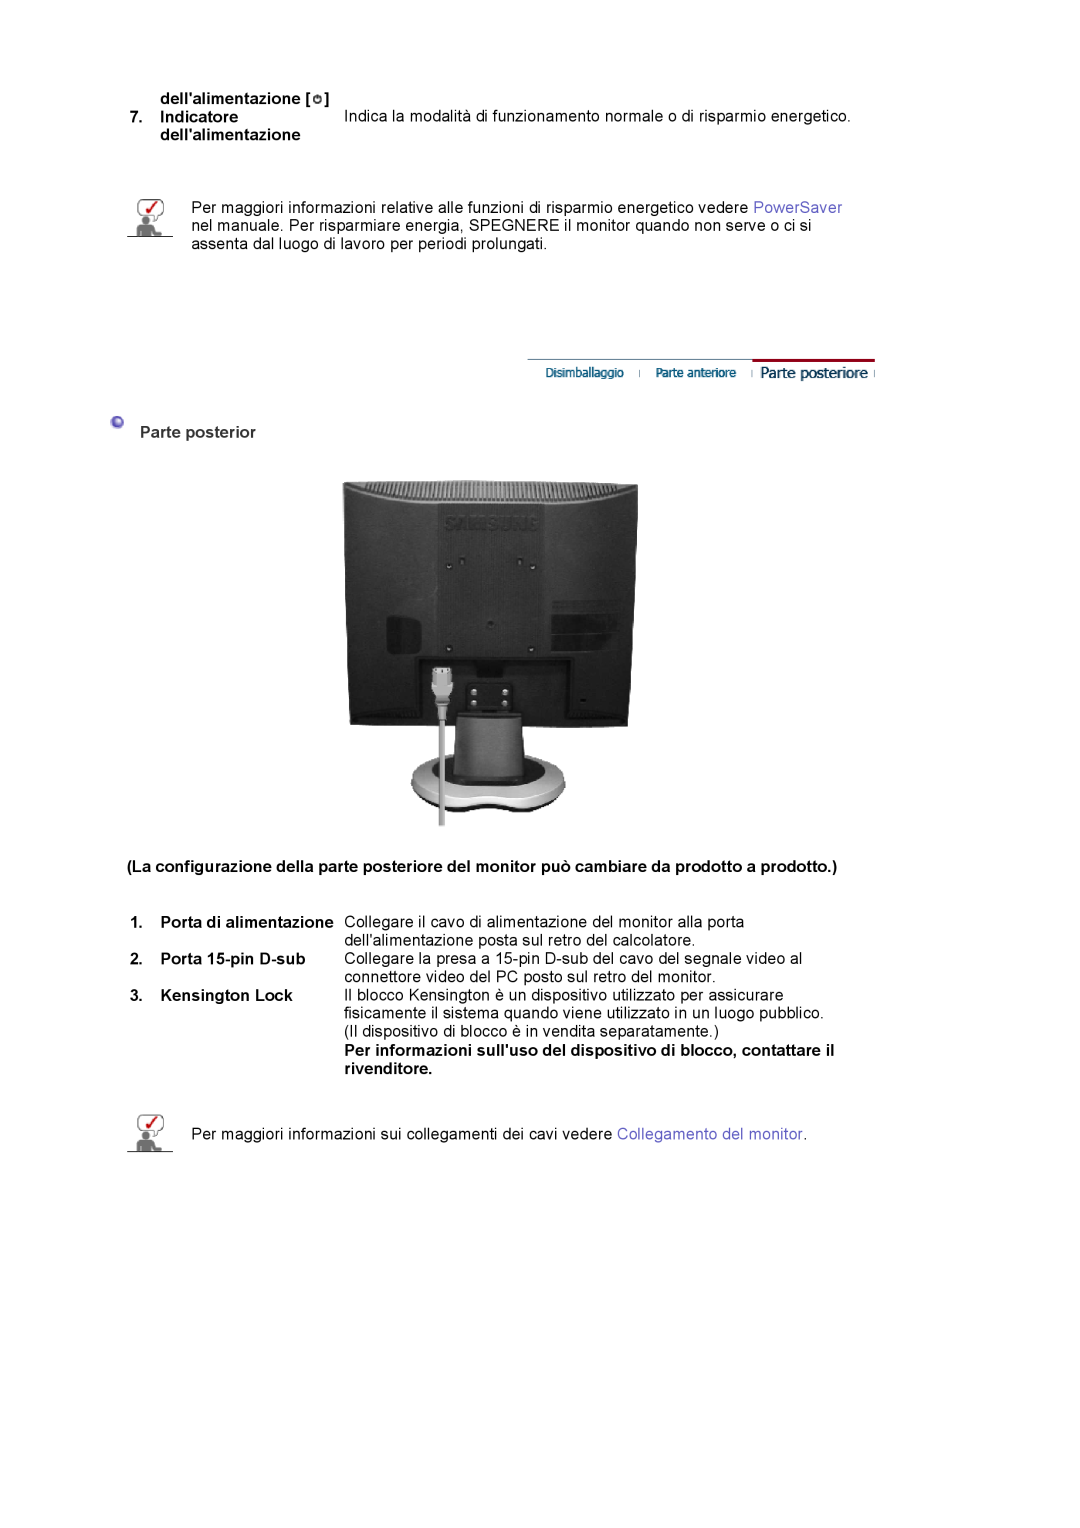 Samsung LS17MJVKS/EDC manual dellalimentazione, Parte posterior 